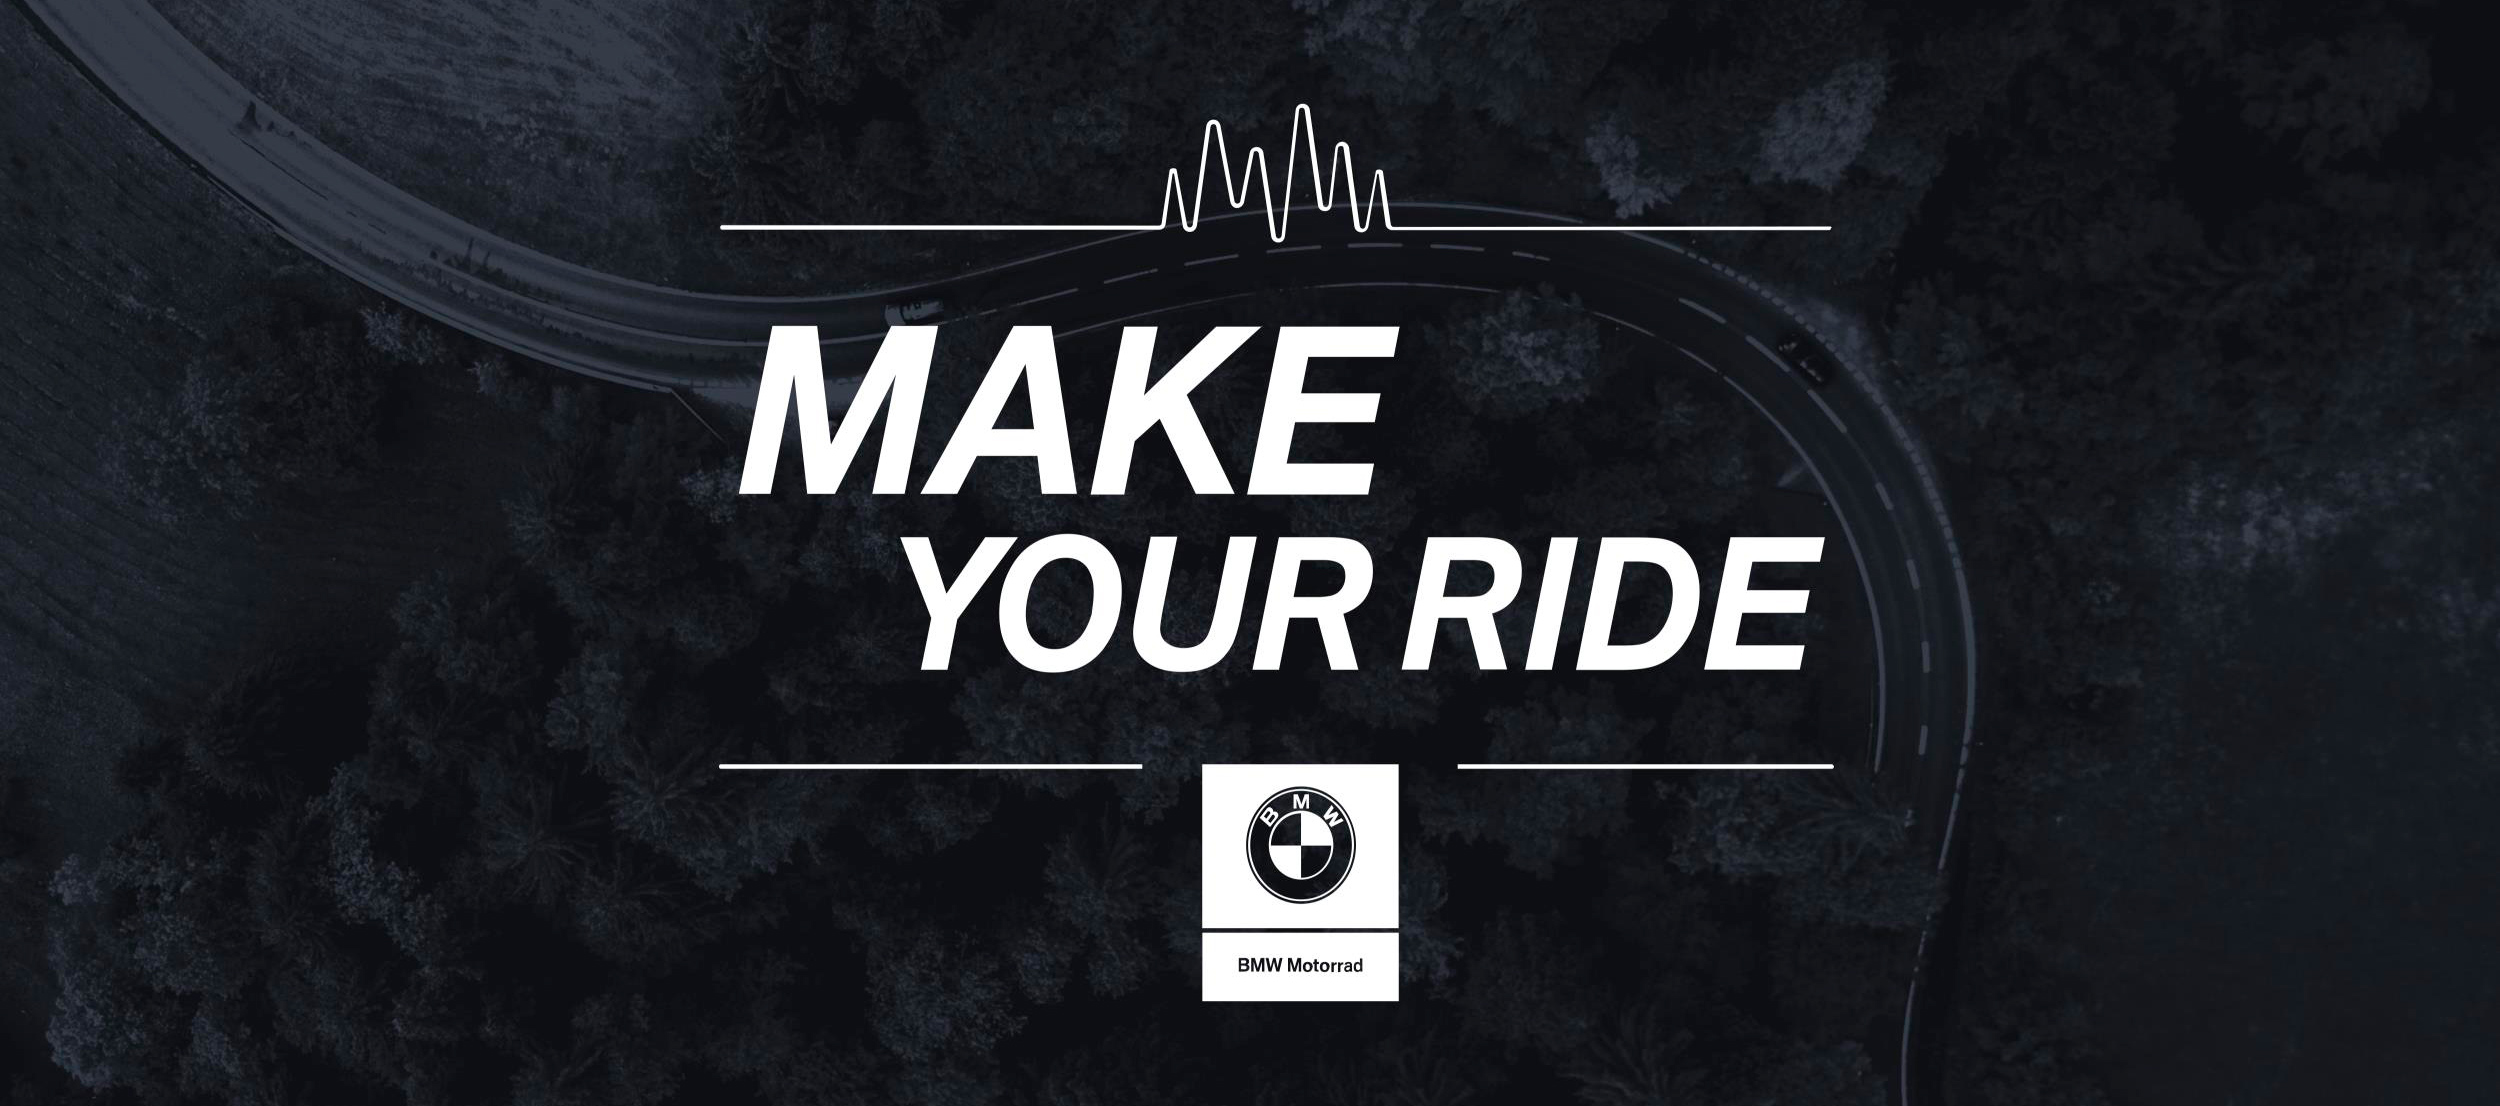 BMW Make your Ride, descubre las nuevas BMW R 1250 GS y 1250 RT